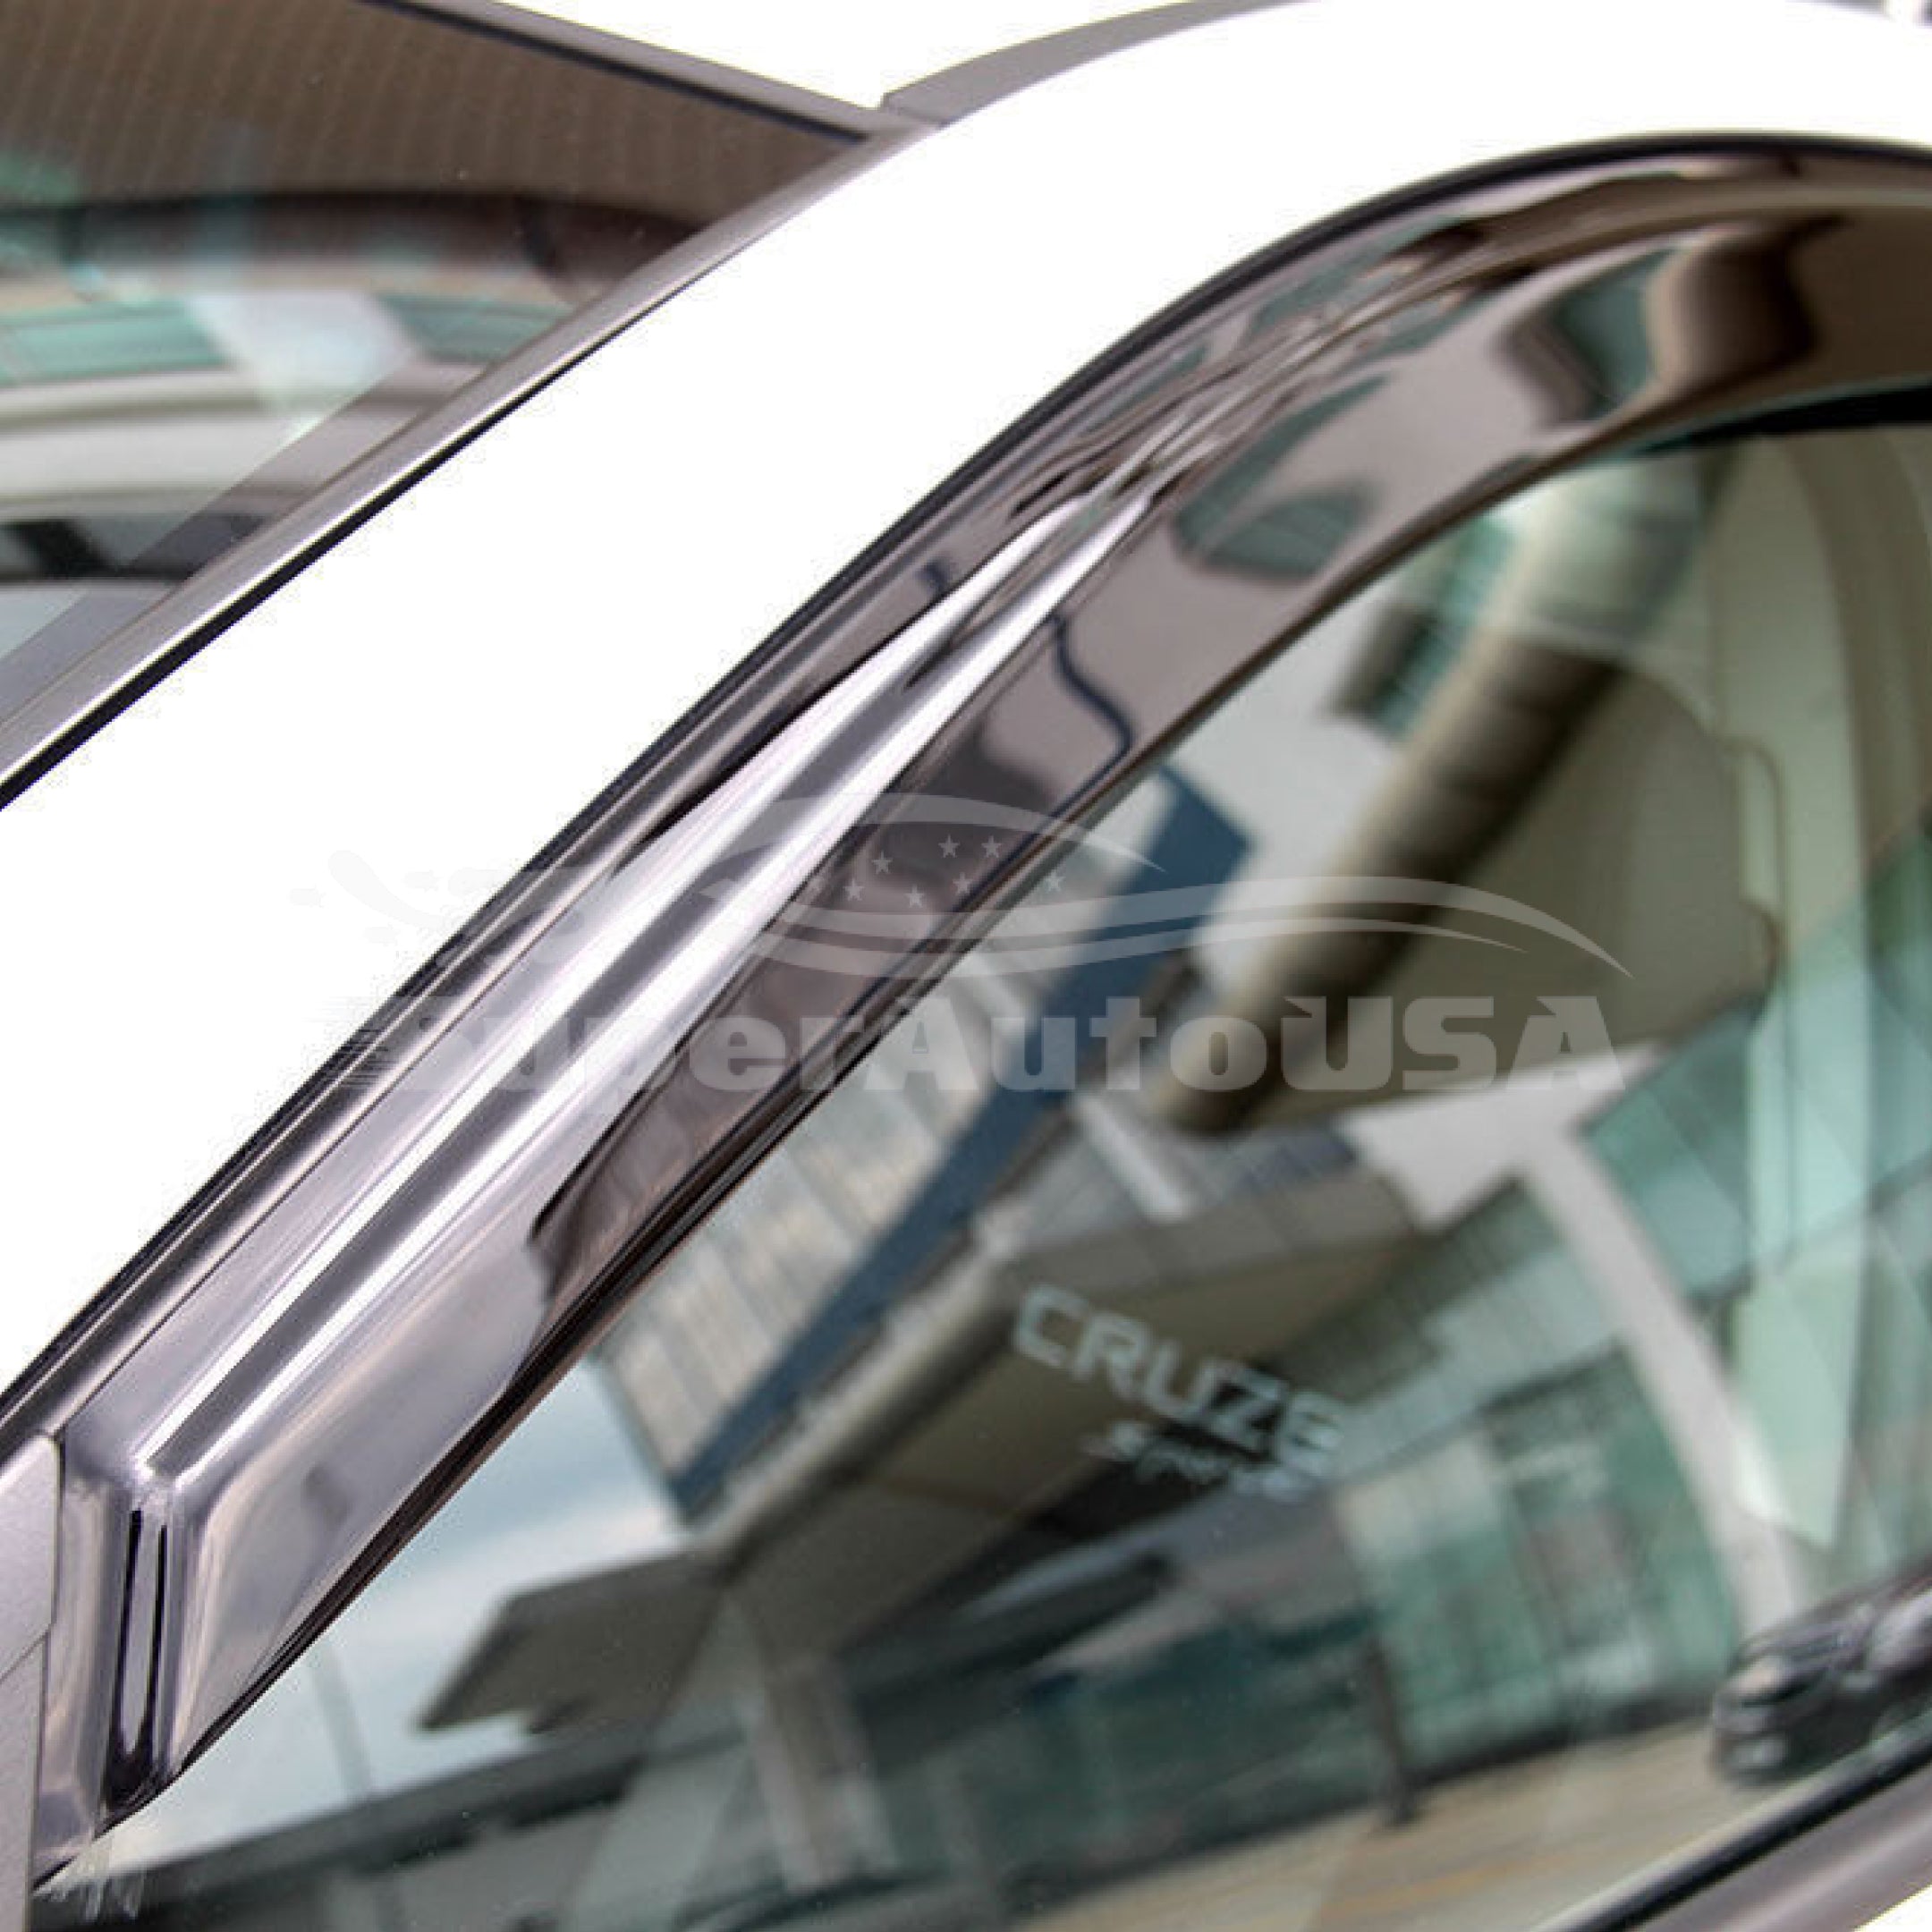 Ajuste 2018-21 Subaru Impreza Sedan OE Style Vent Window Viseras Rain Sun Wind Guards Shade Deflectors